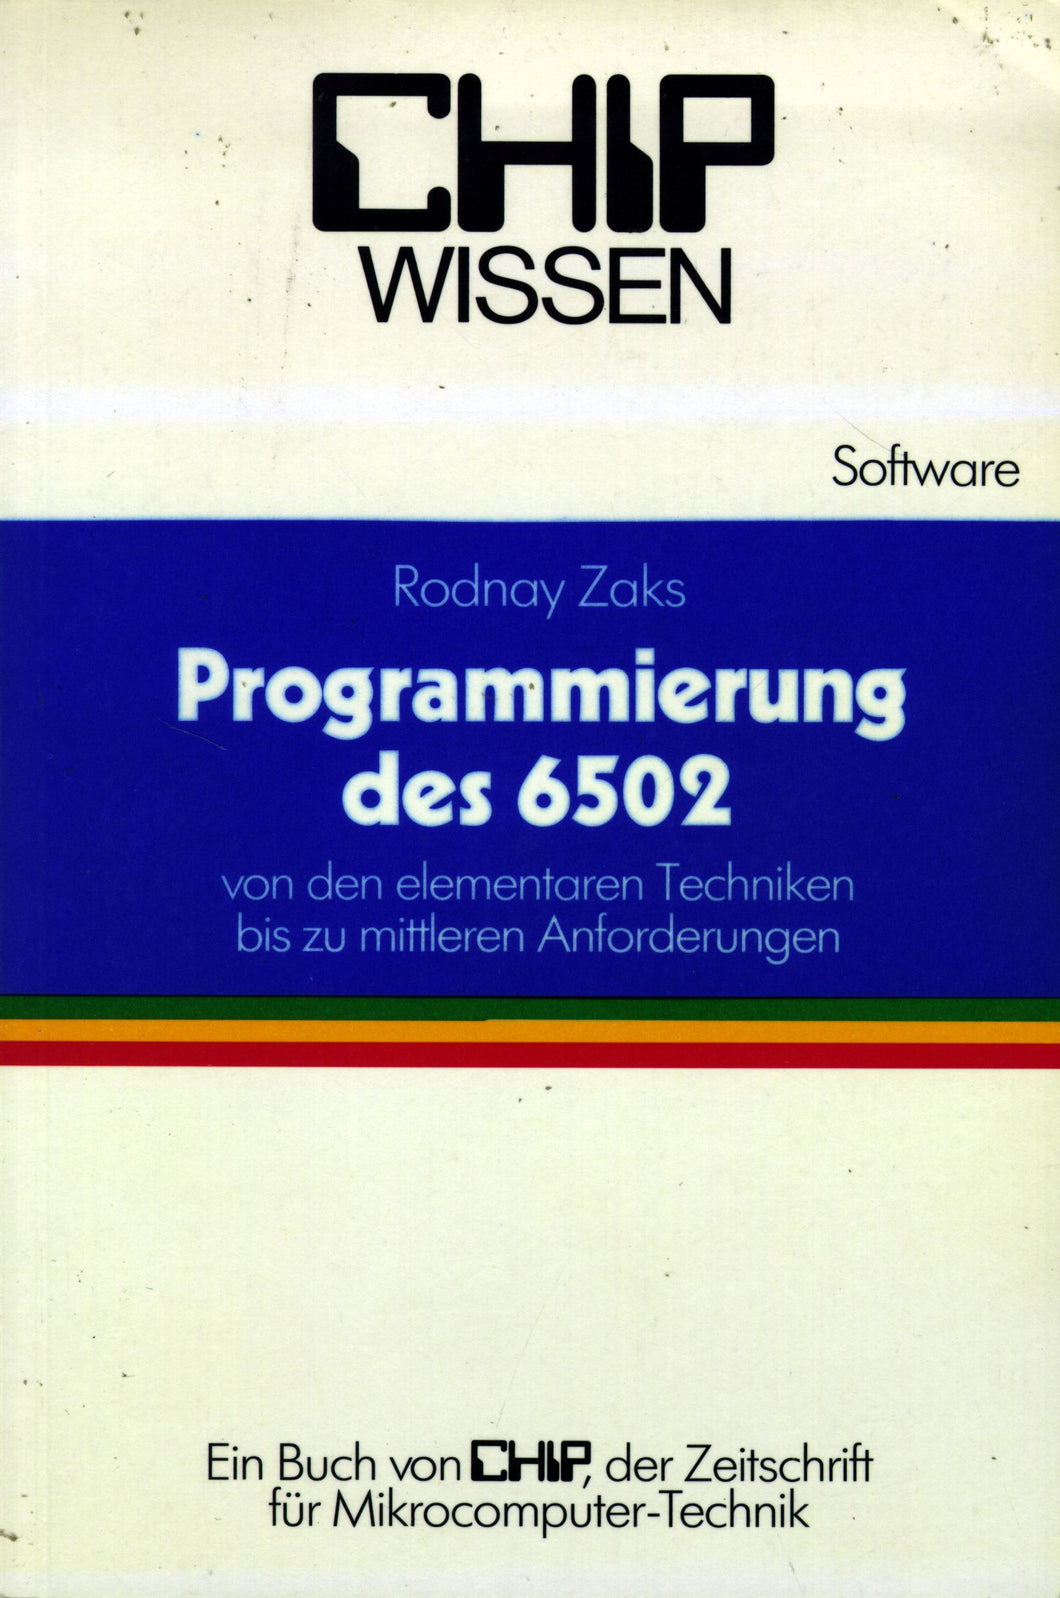 Die Programmierung des 6502